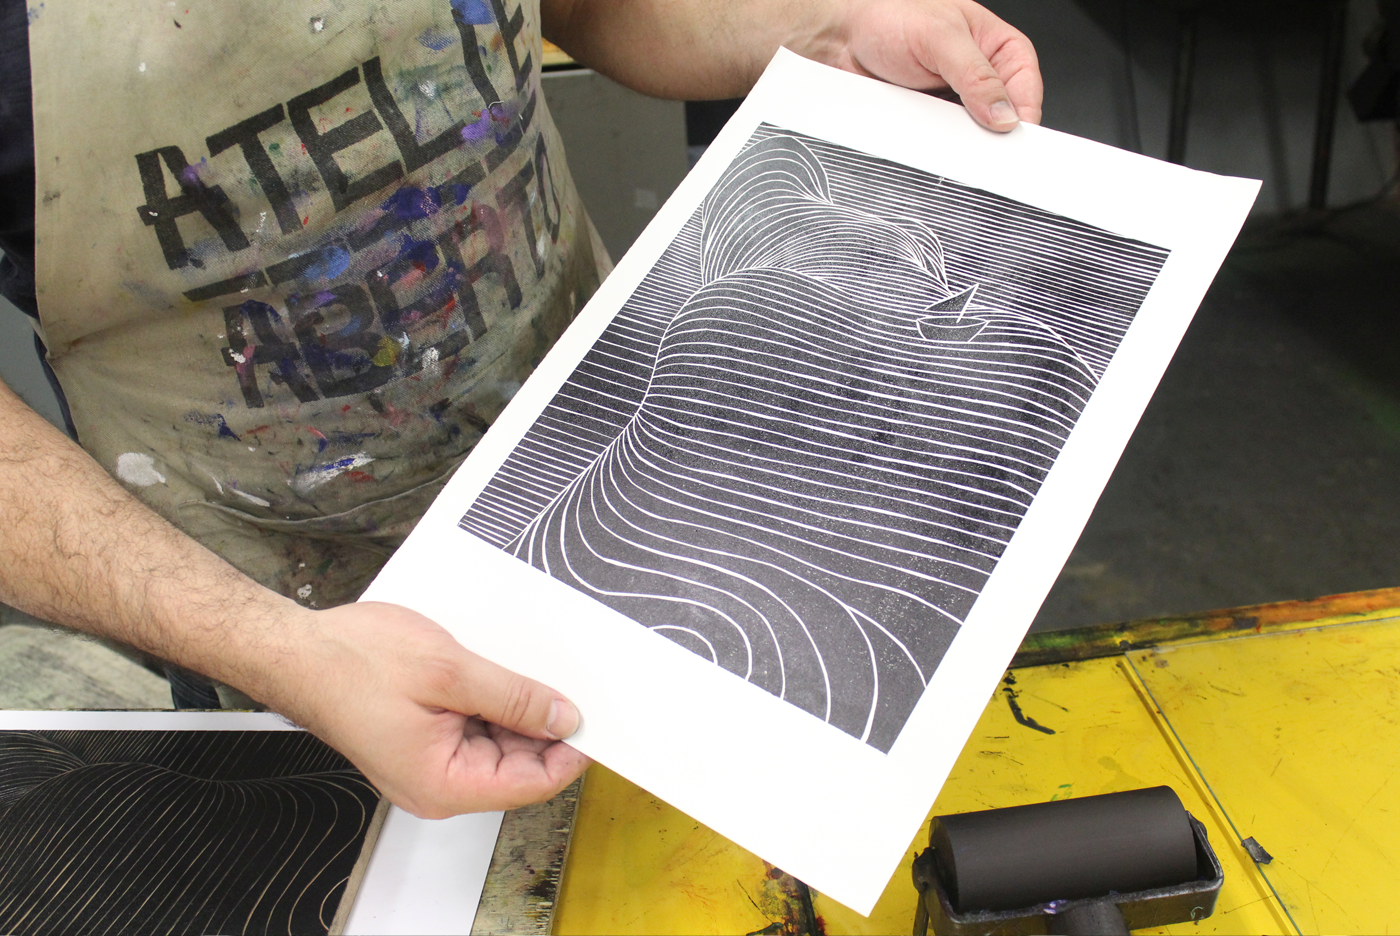 xilografia woodcut artes gráficas impressão press